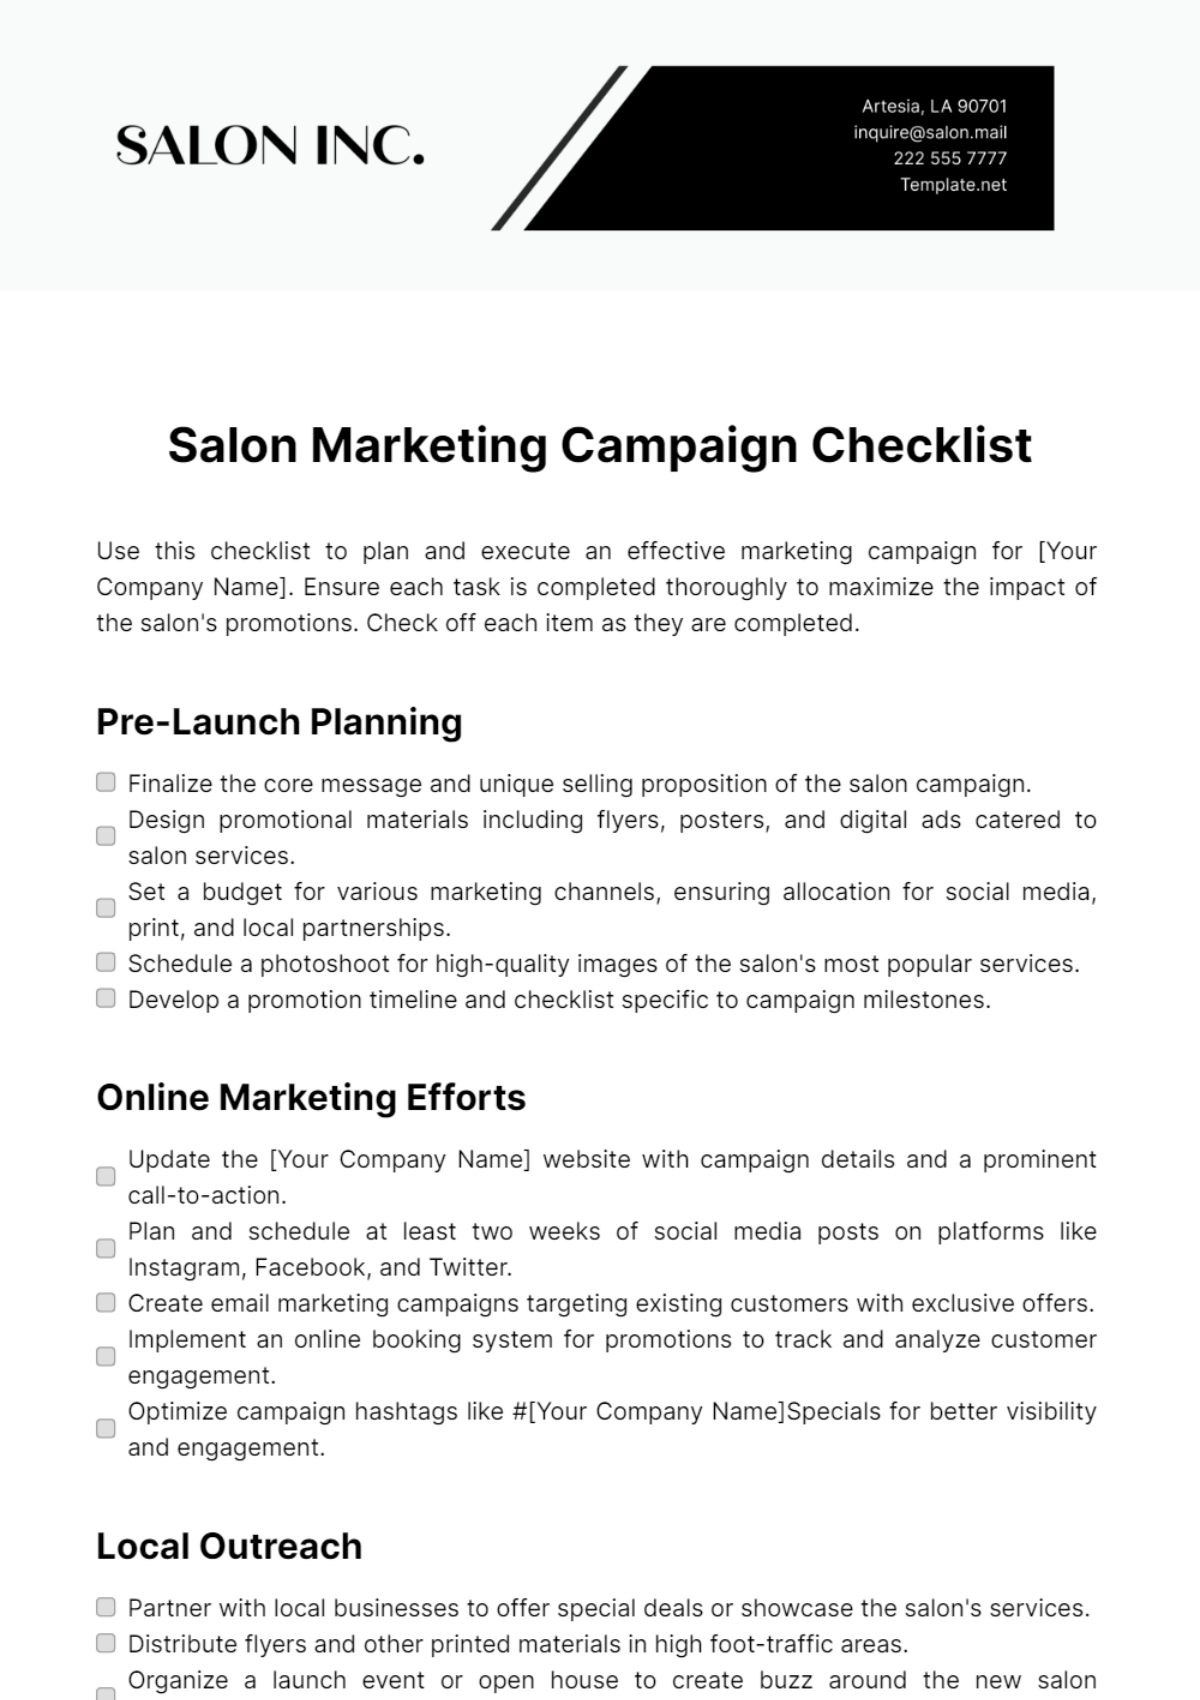 Salon Marketing Campaign Checklist Template